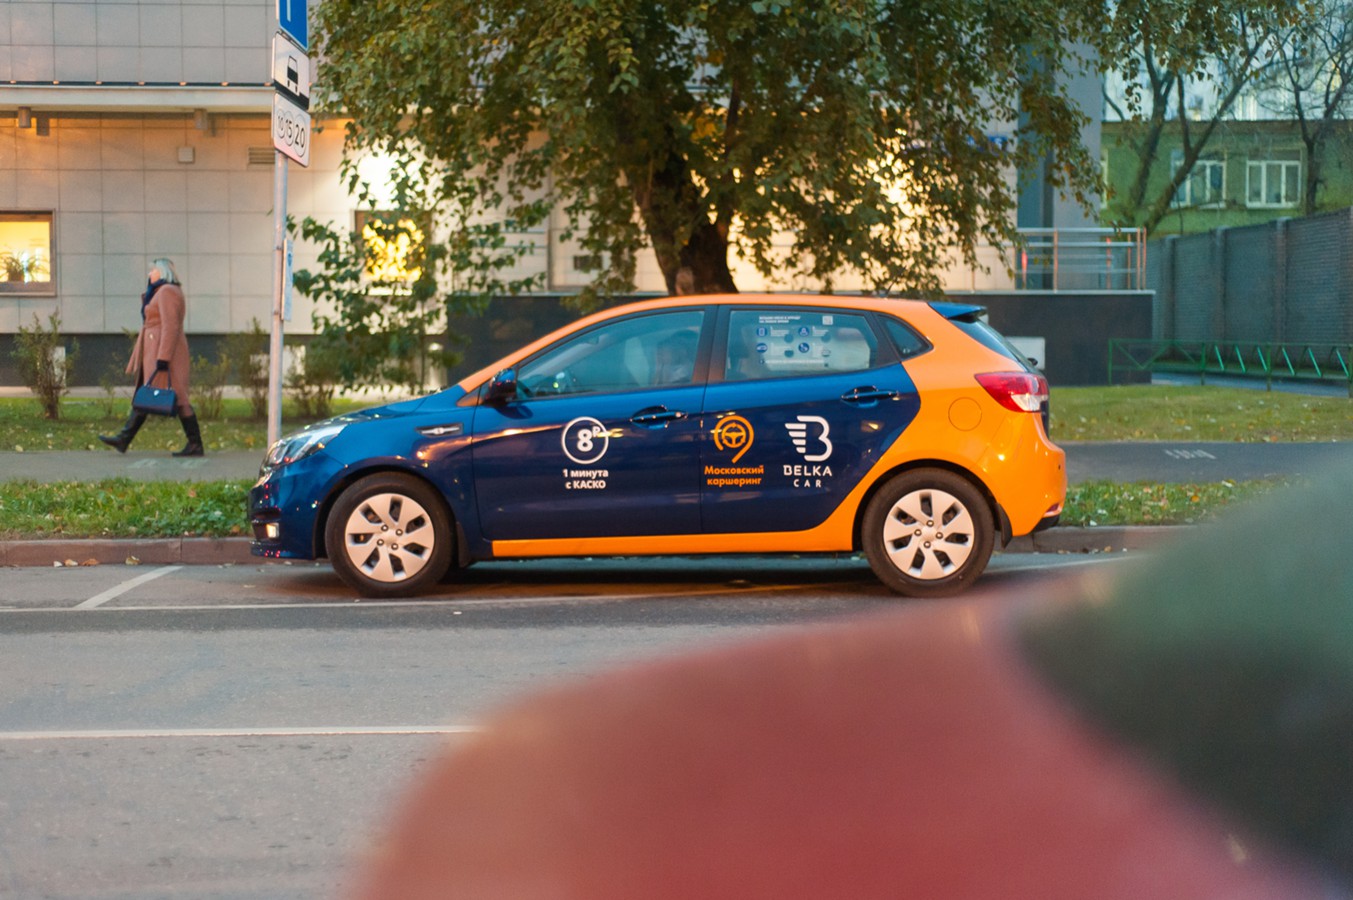 Каршеринг в московской области. Каршеринг синий с оранжевым. Каршеринг желто-синие машины. Такси и каршеринг. Каршеринг с оранжевой полосой.